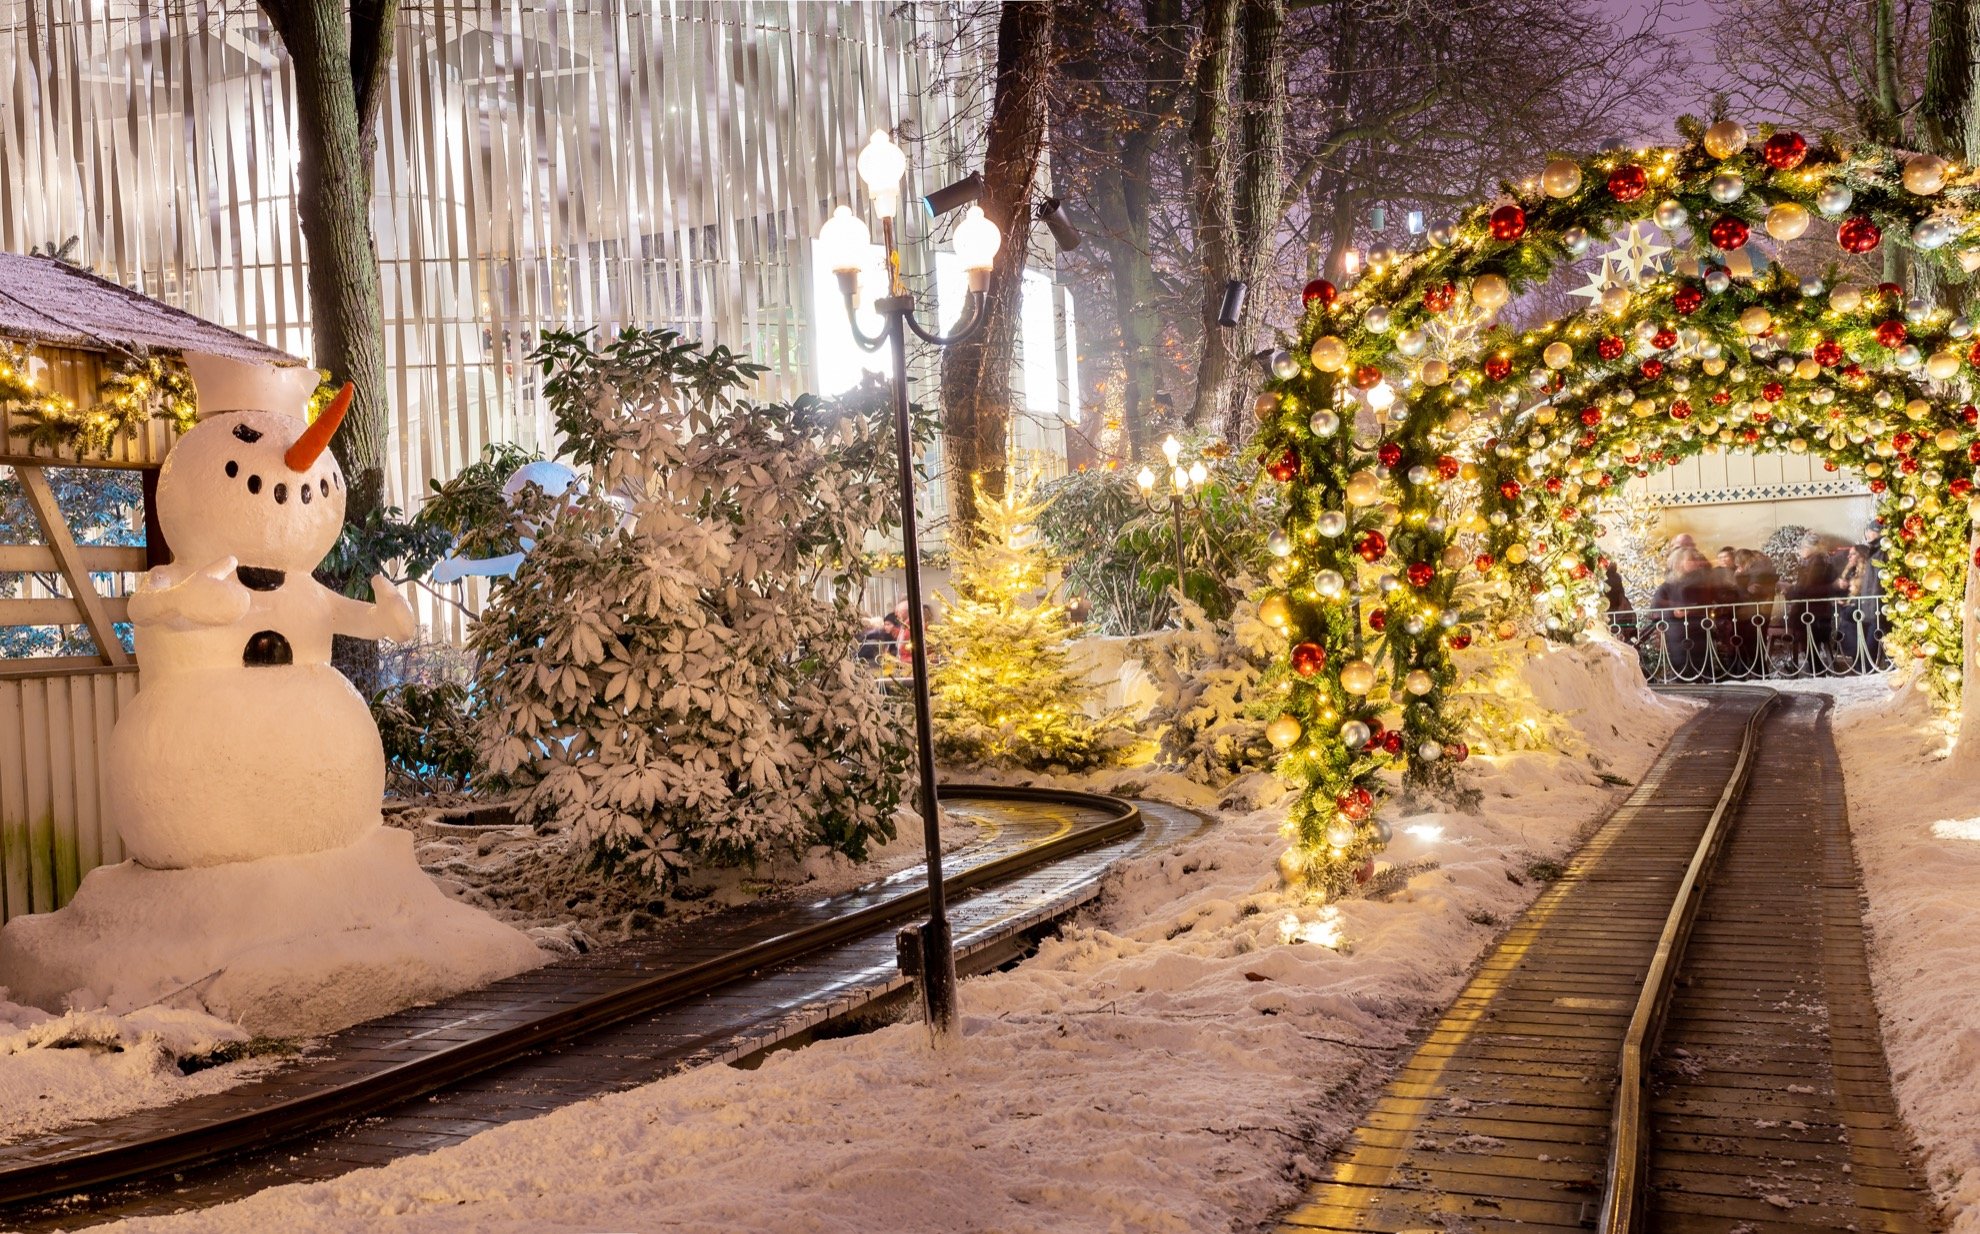 Por qué Tivoli Gardens es una visita obligada alrededor de la Navidad - 13